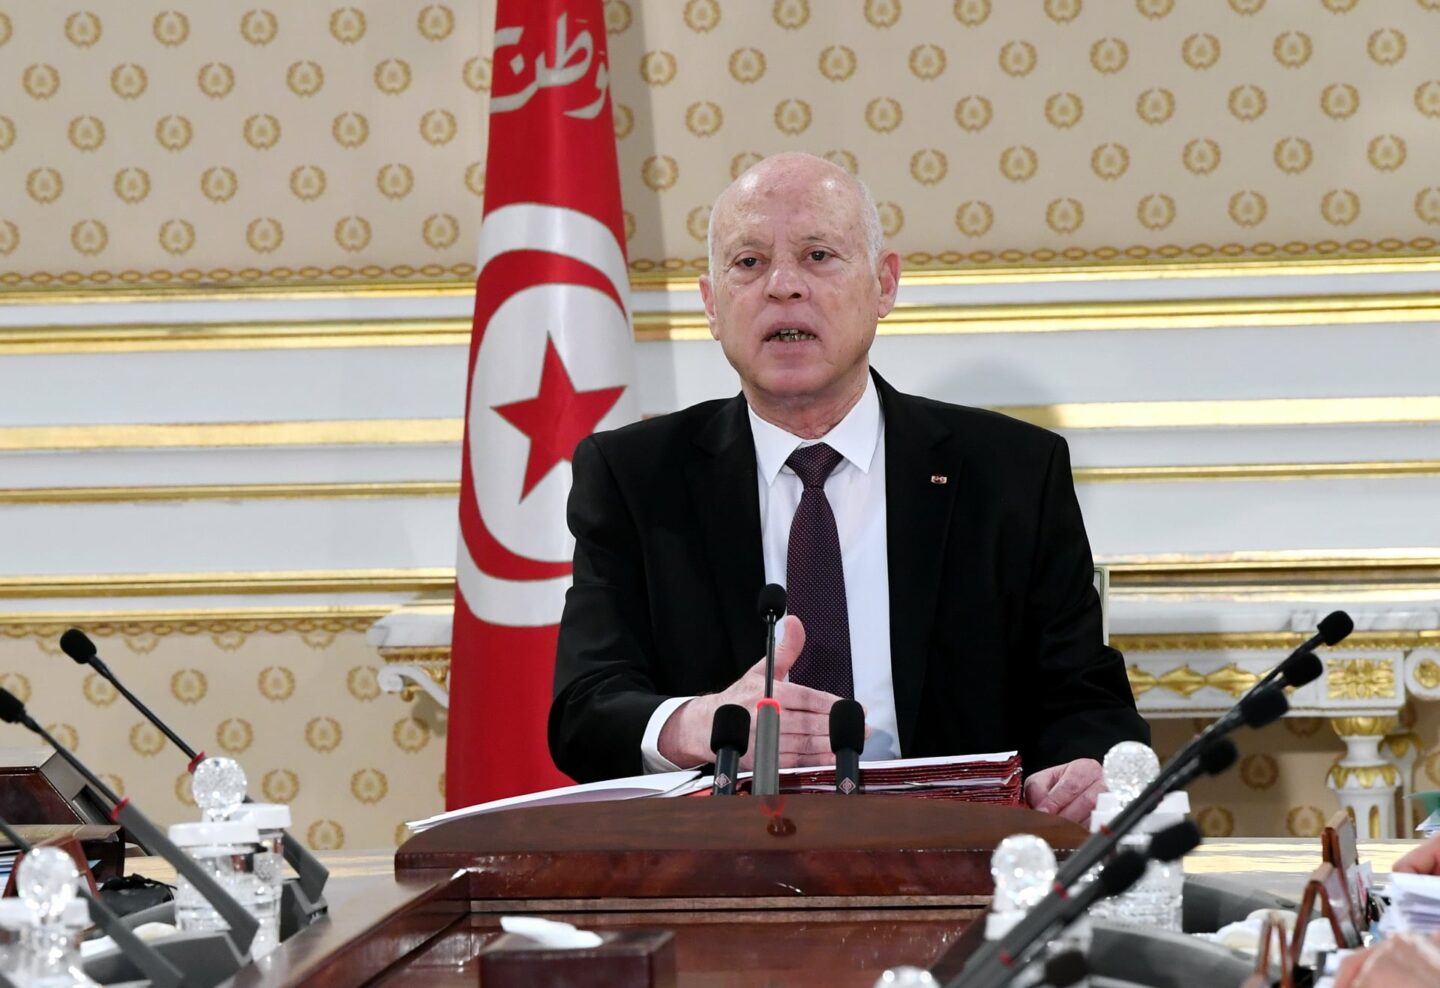 L'Union africaine condamne les propos du président tunisien sur les migrants